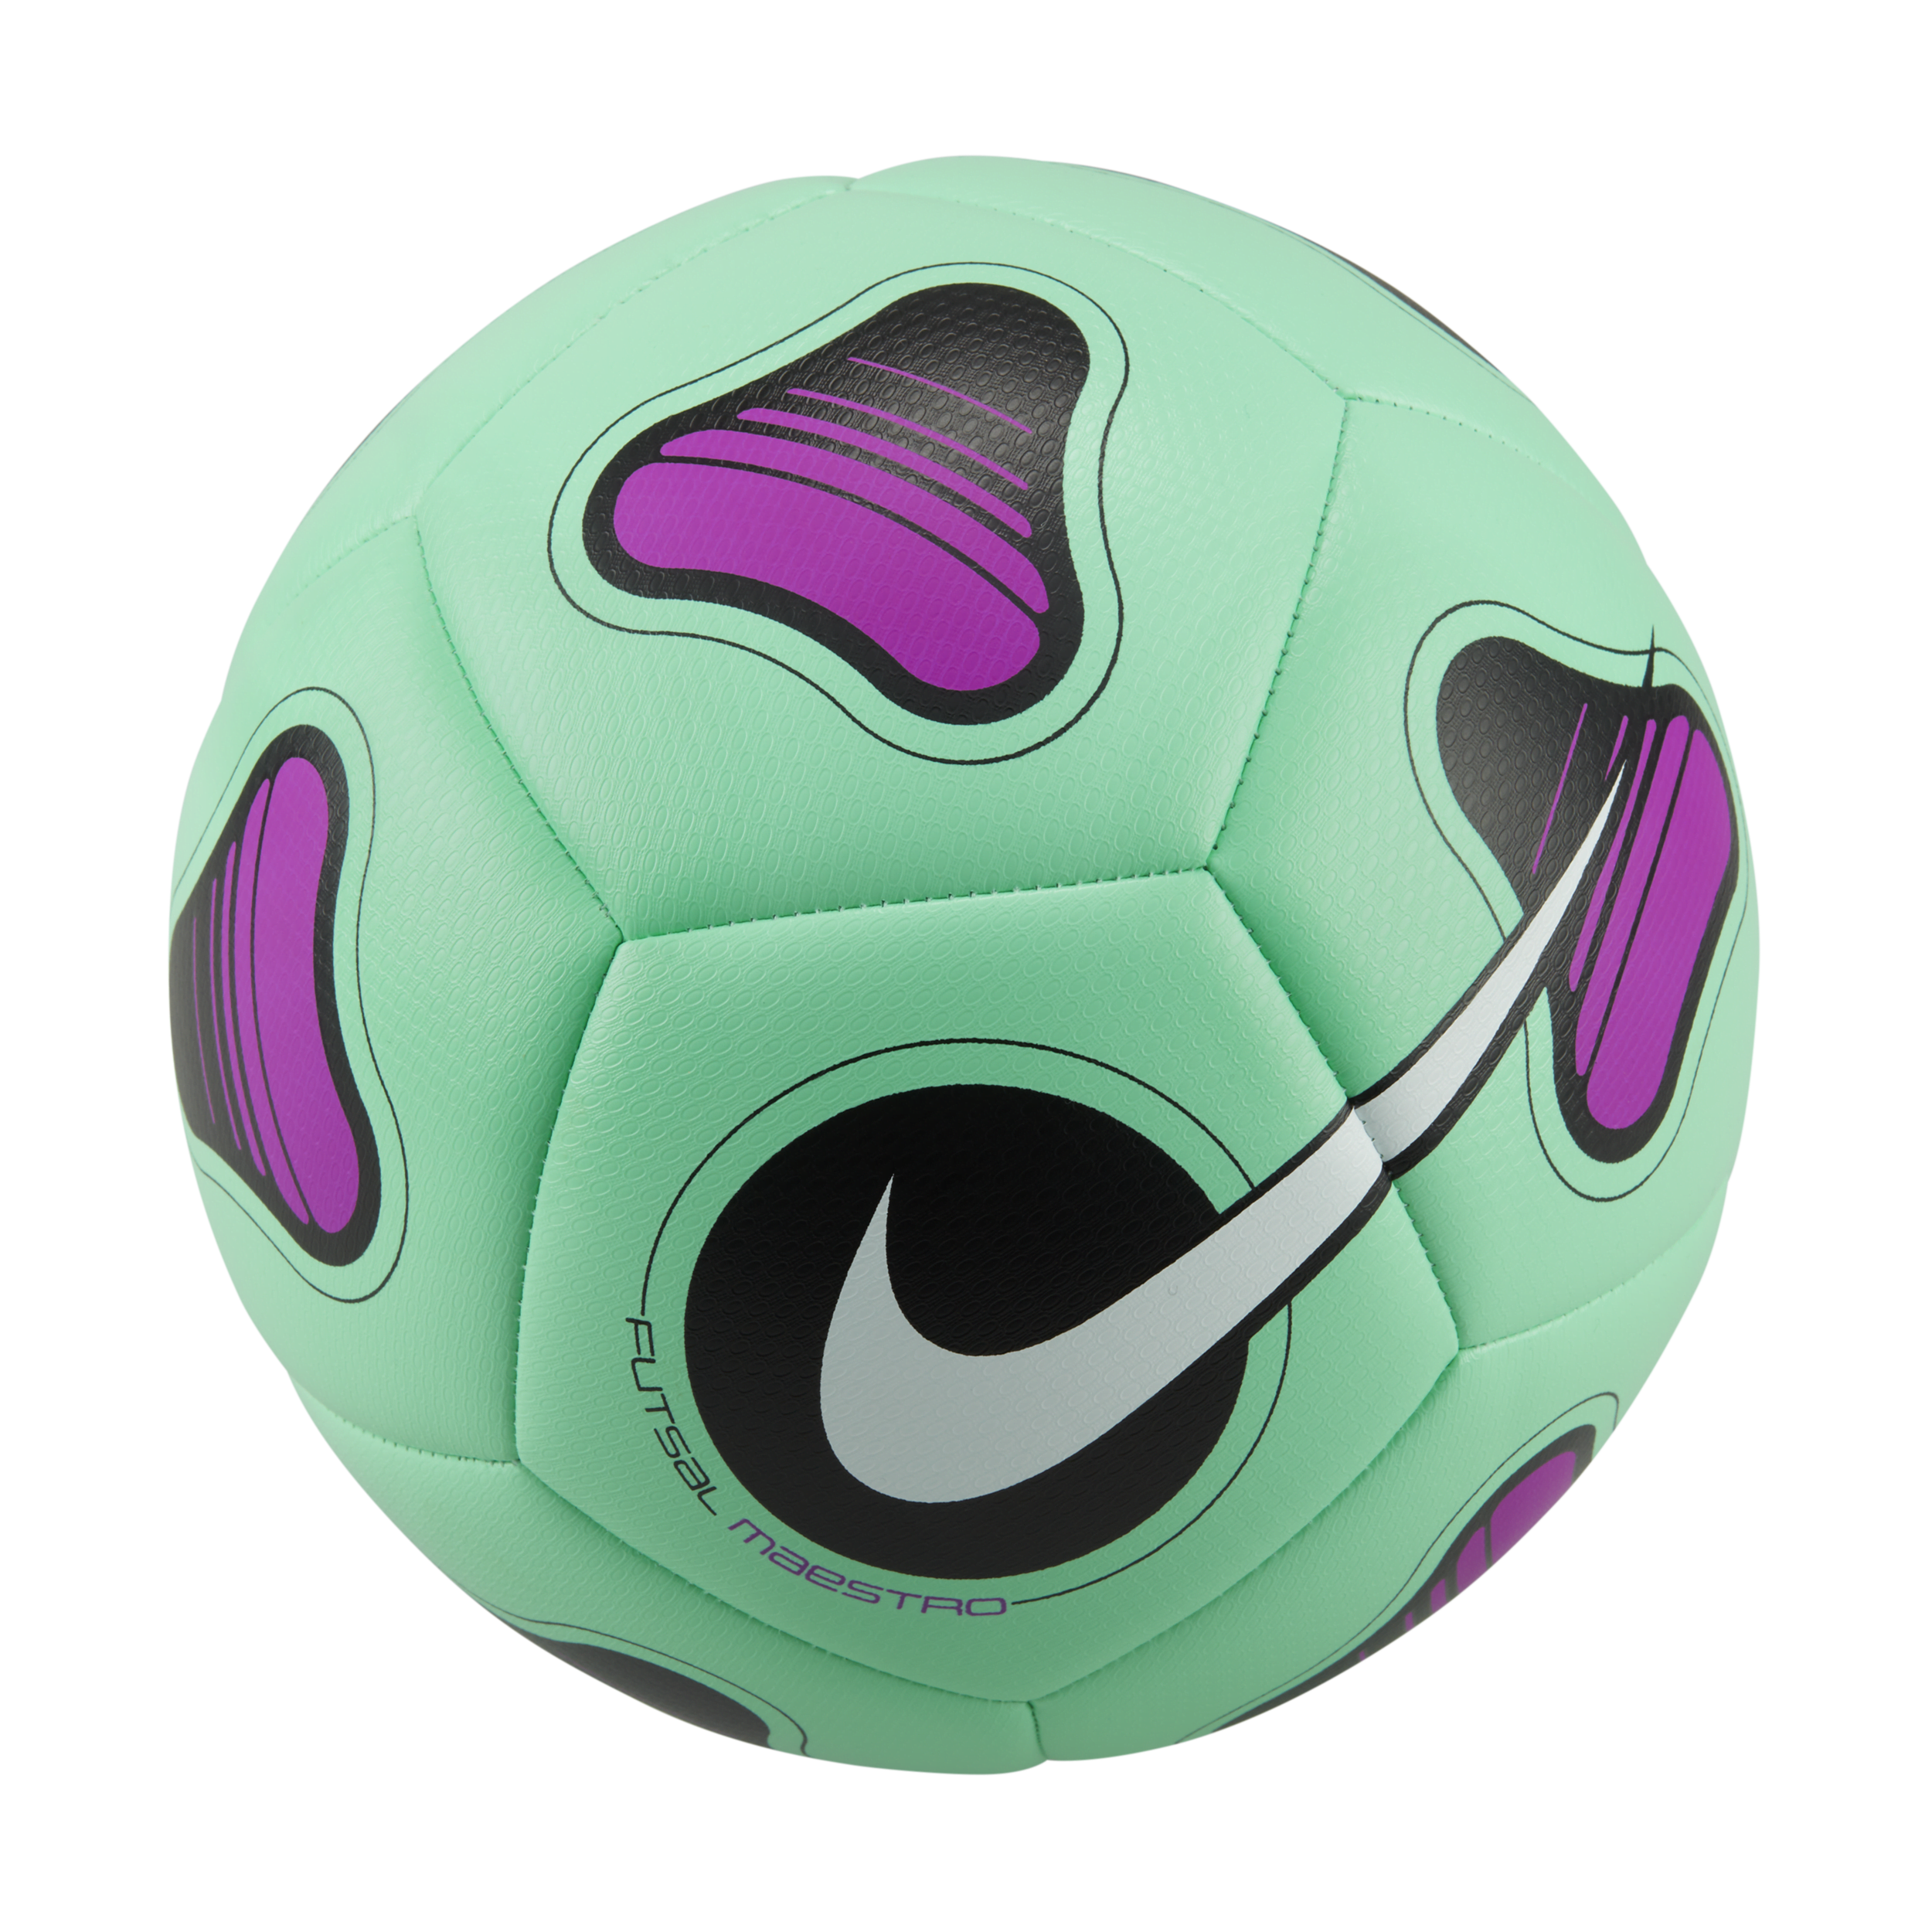 Pallone da calcio a 5 Nike Maestro - Verde